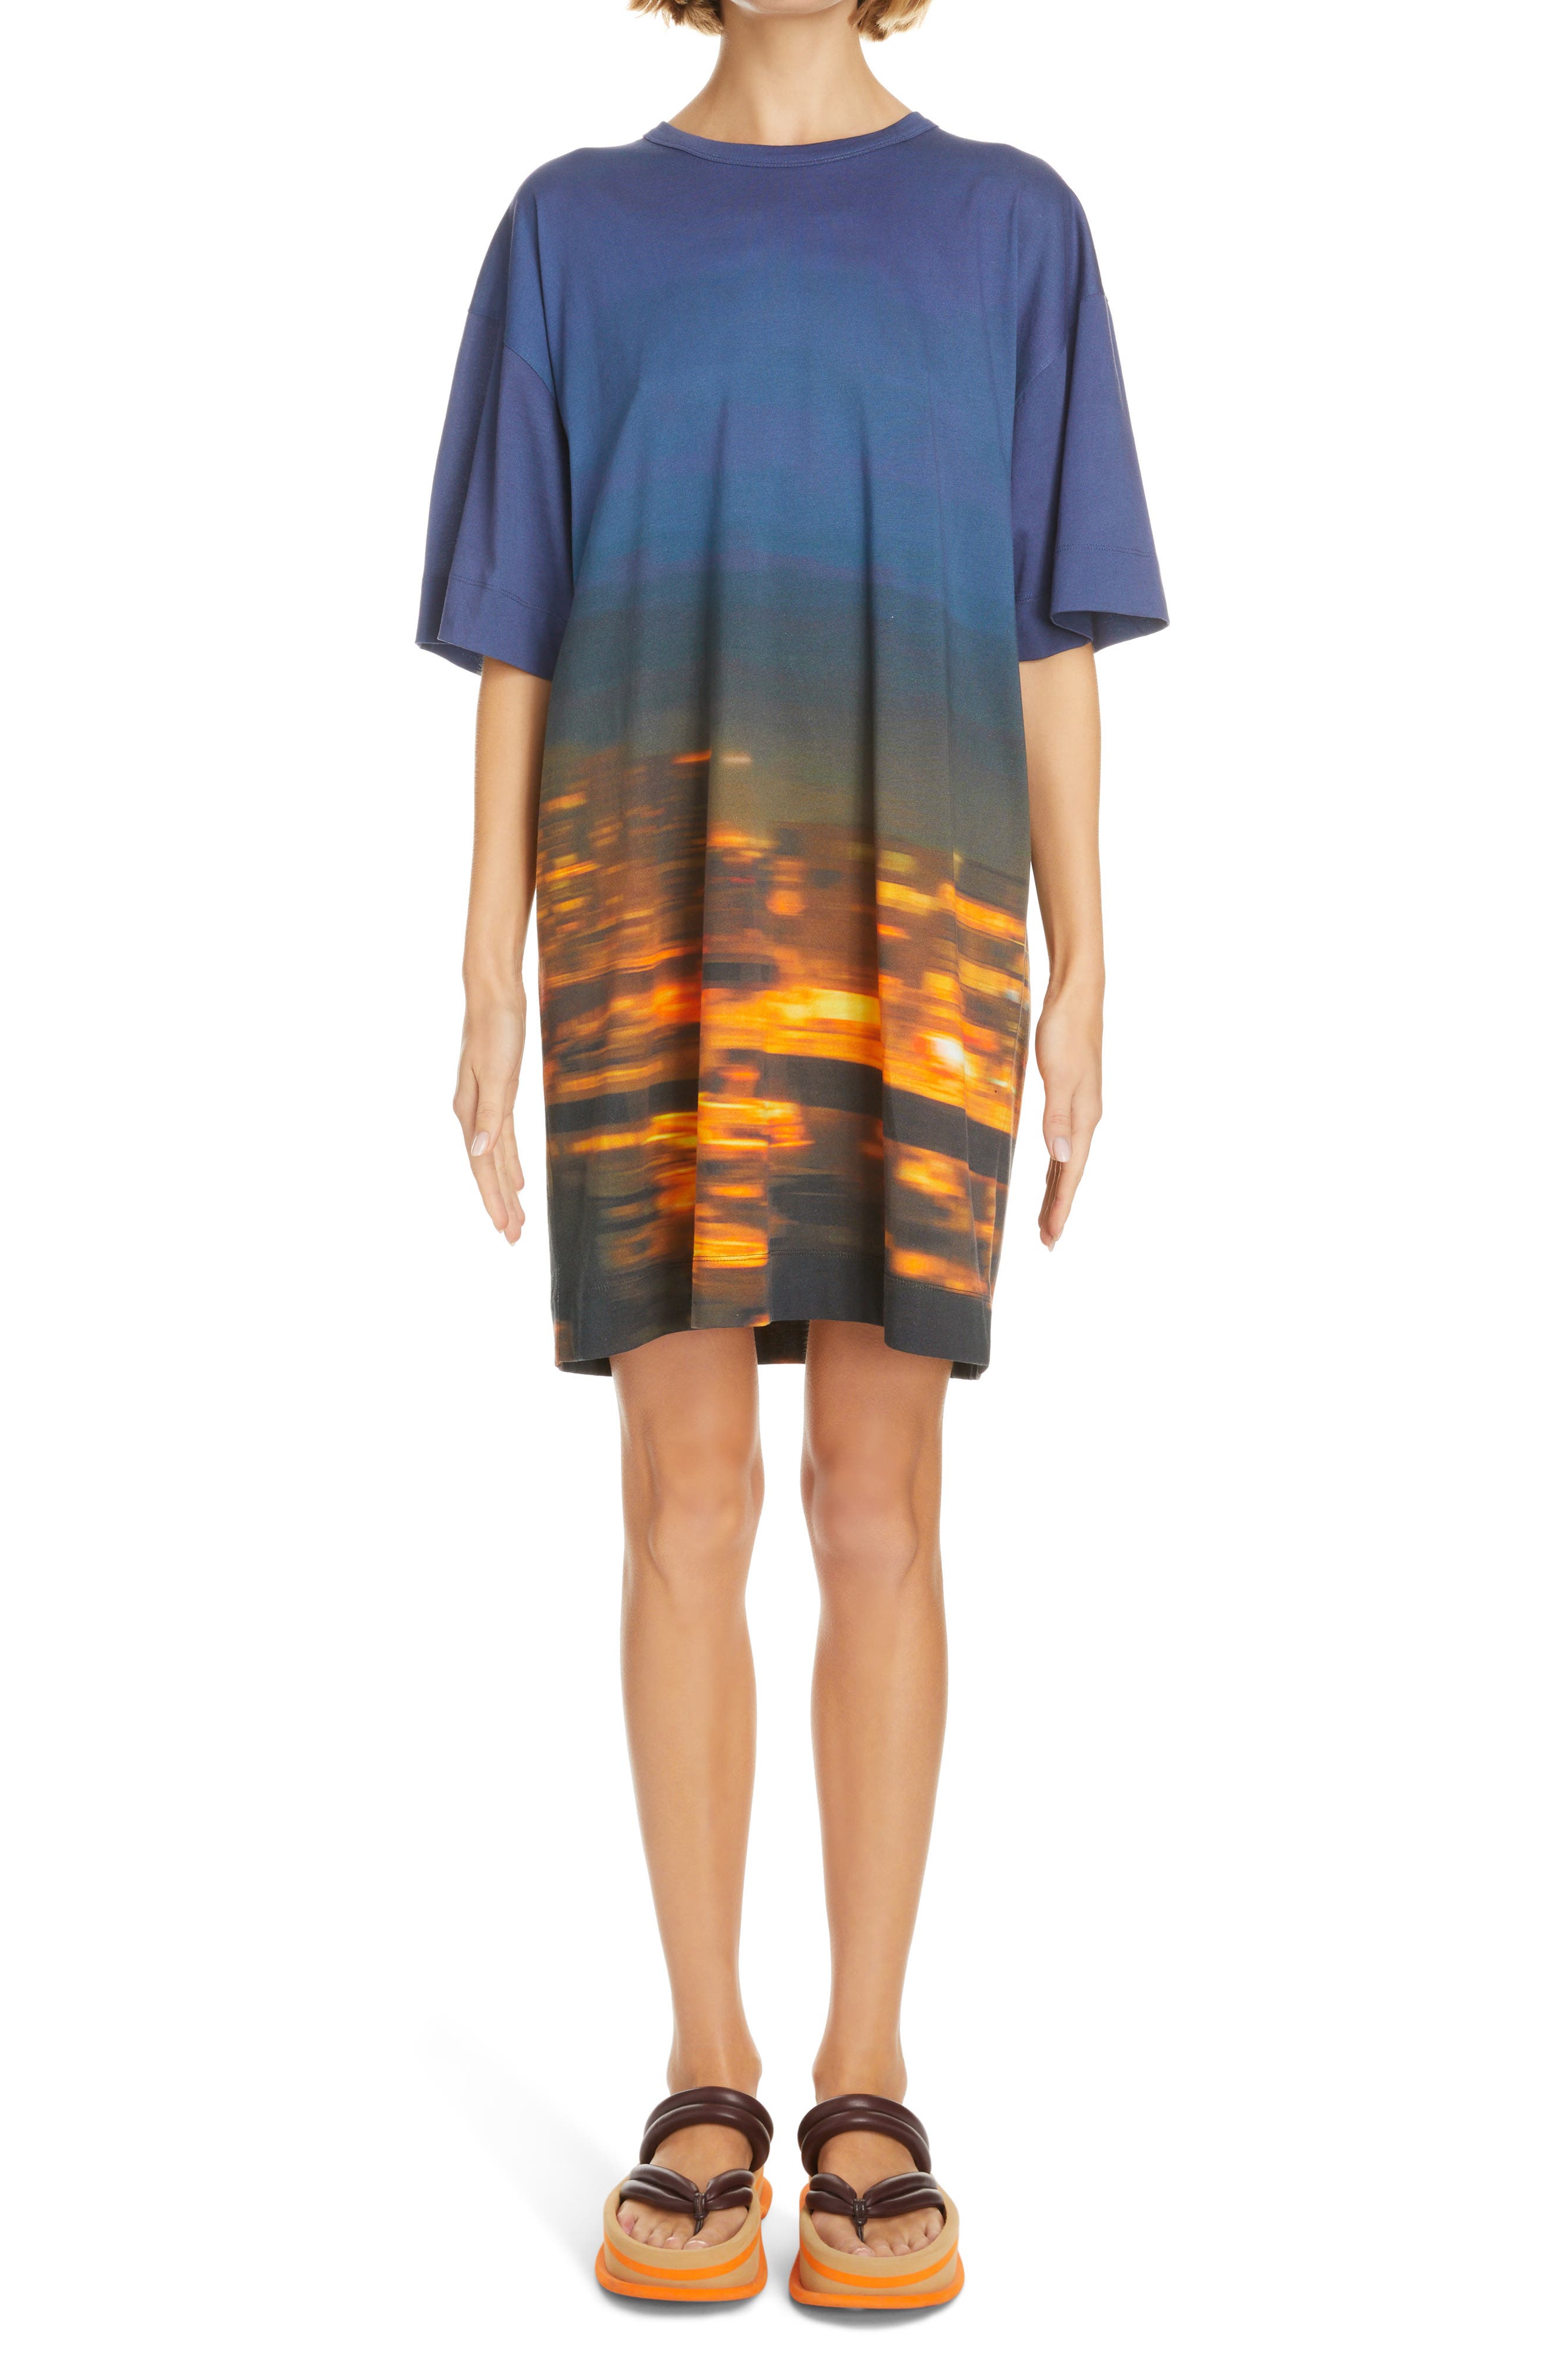 Dries Van Noten Hegelson Abstract Print Cotton T-Shirt Dress in Blue 504